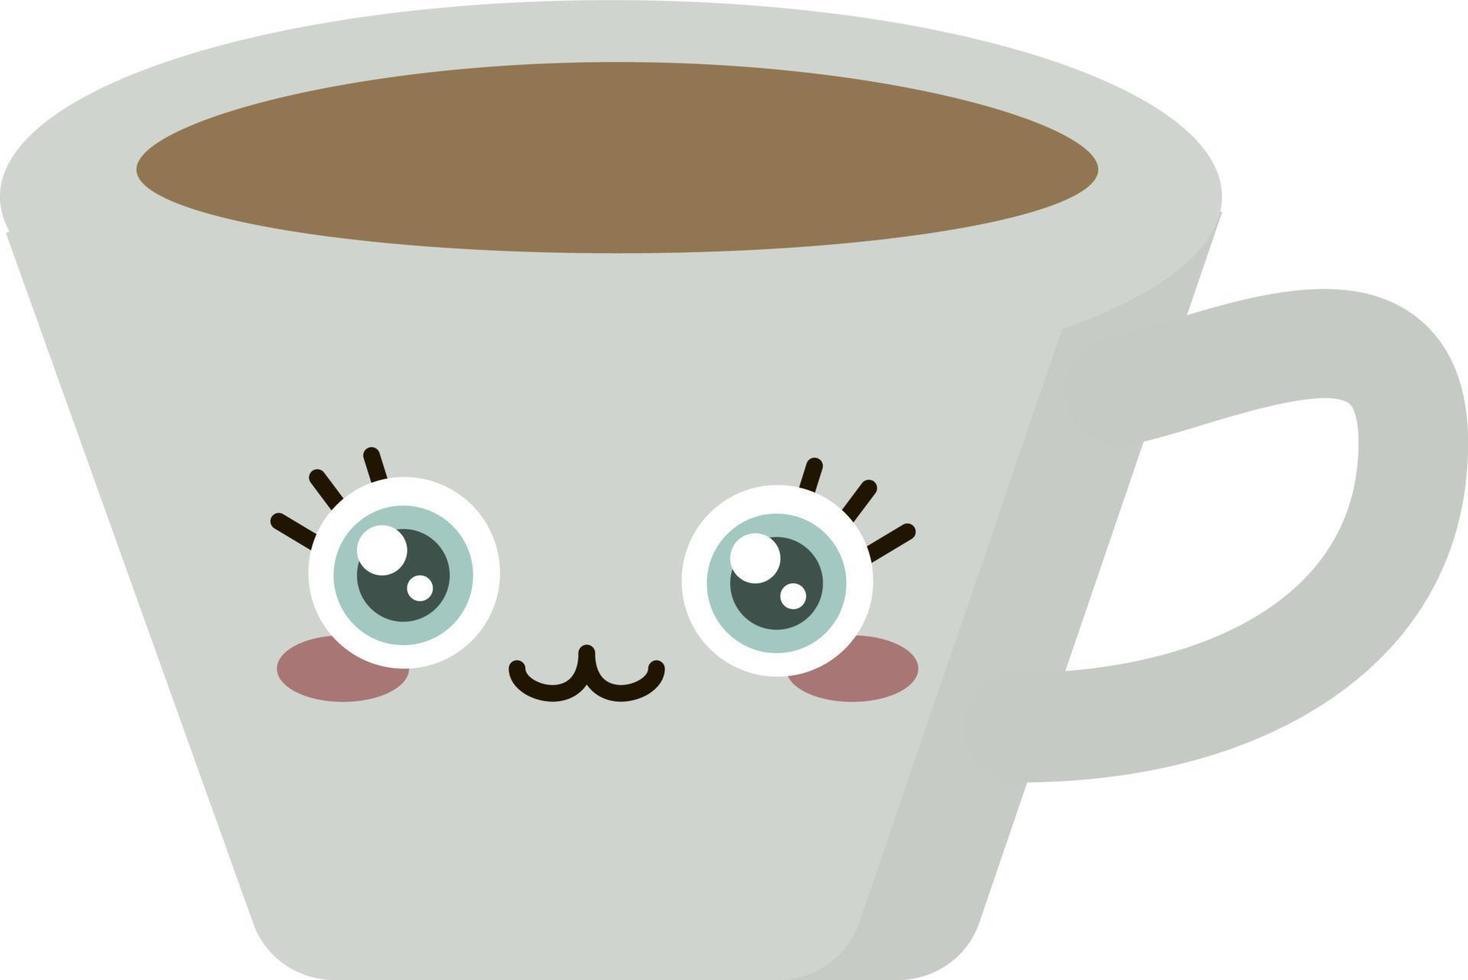 Tasse Kaffee, Illustration, Vektor auf weißem Hintergrund.